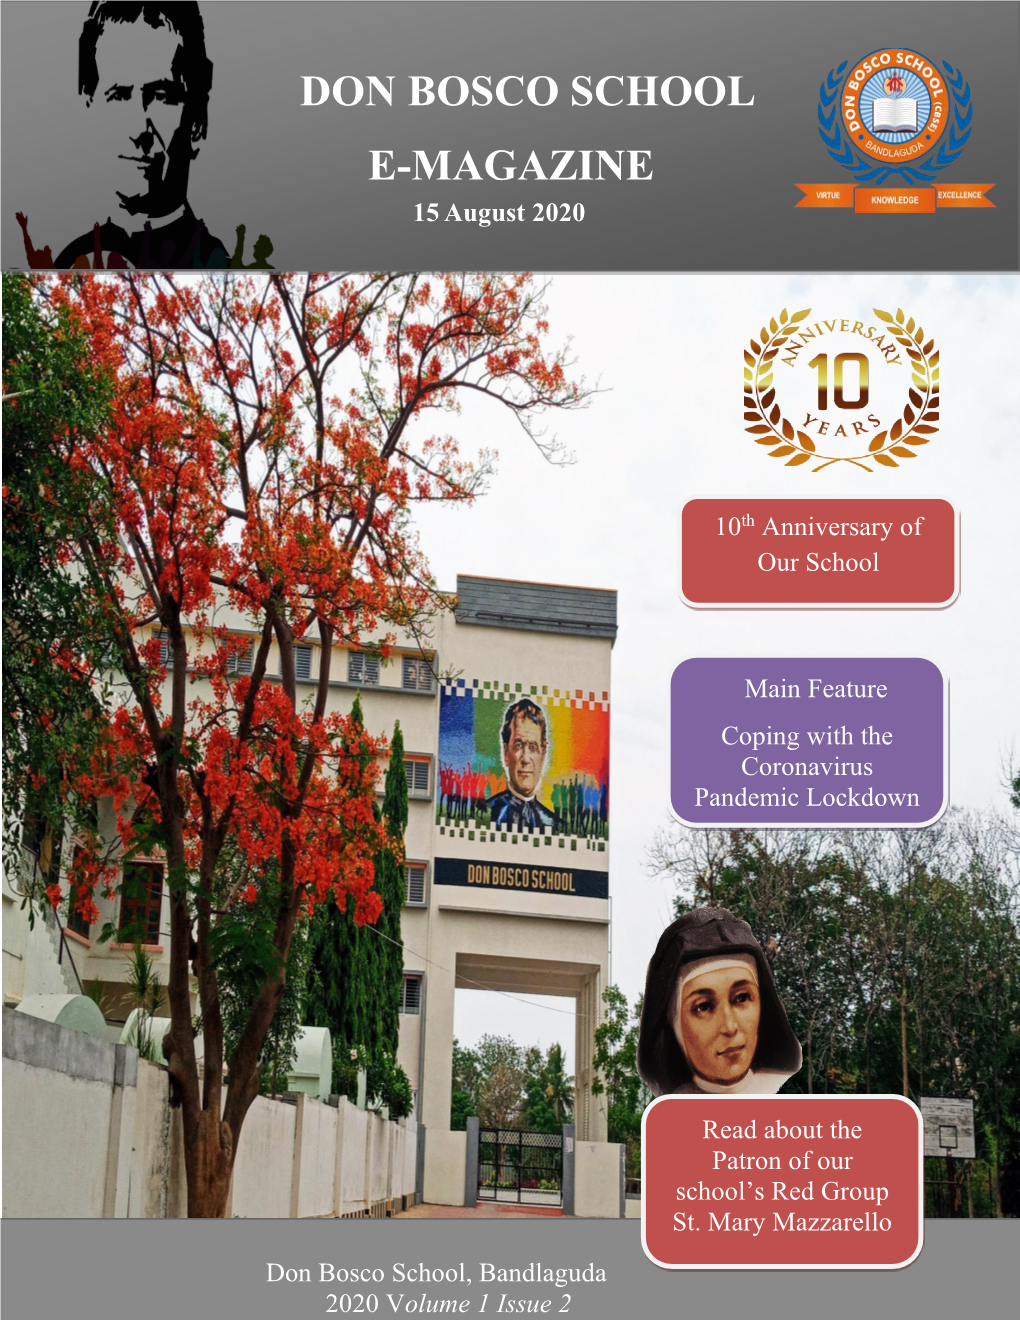 Don Bosco School E-Magazine Vol 1 Issue 2